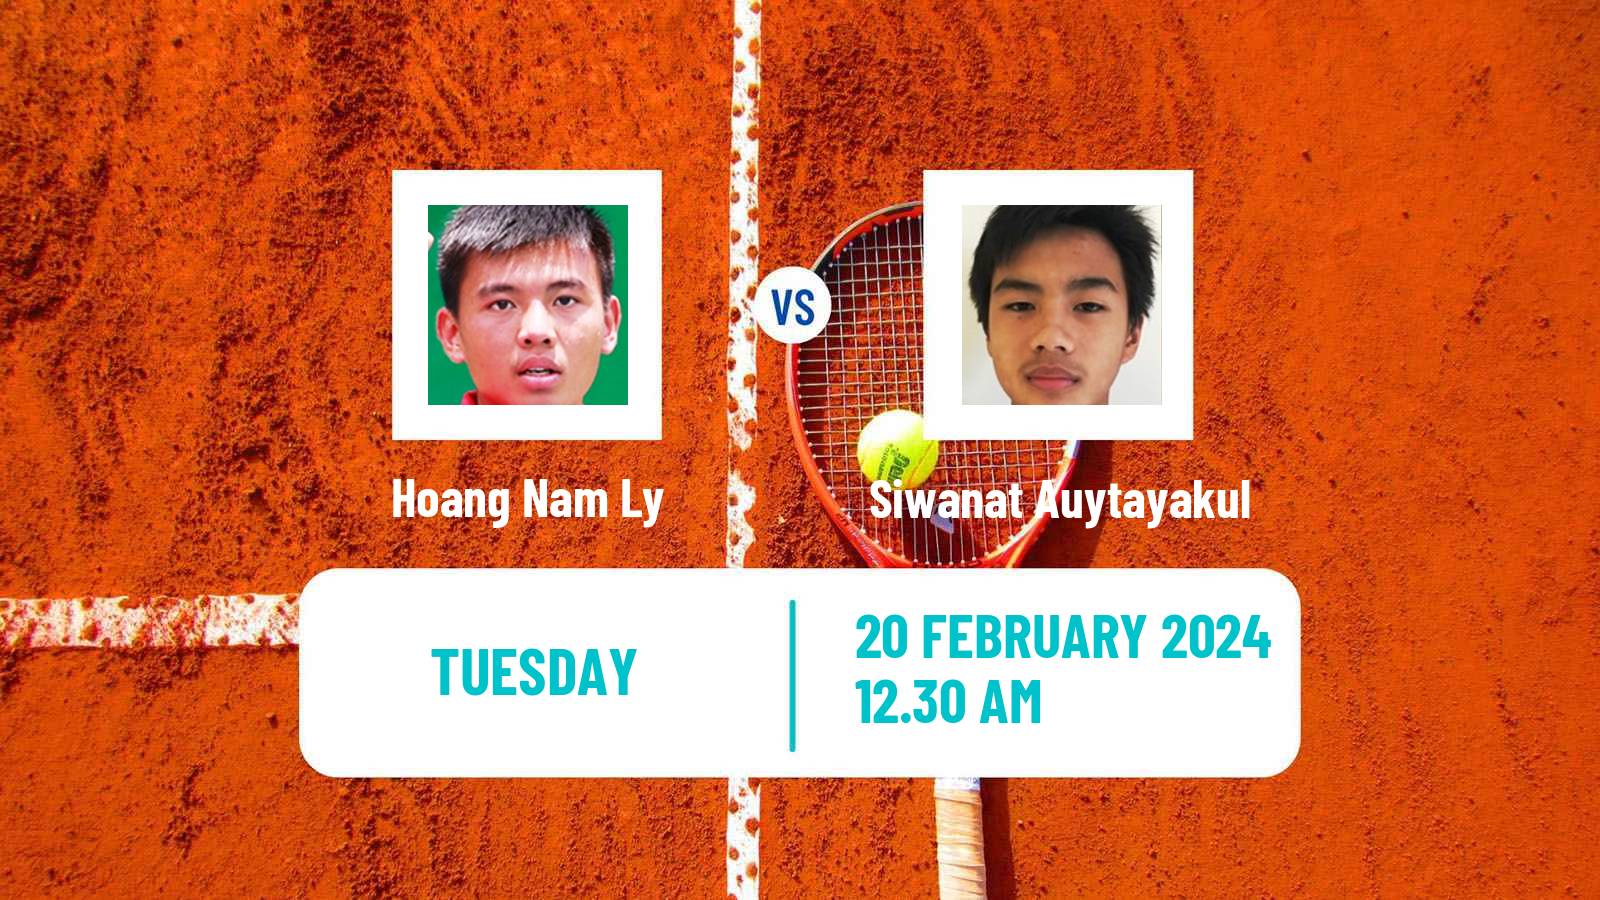 Tennis ITF M15 Nakhon Si Thammarat 2 Men 2024 Hoang Nam Ly - Siwanat Auytayakul